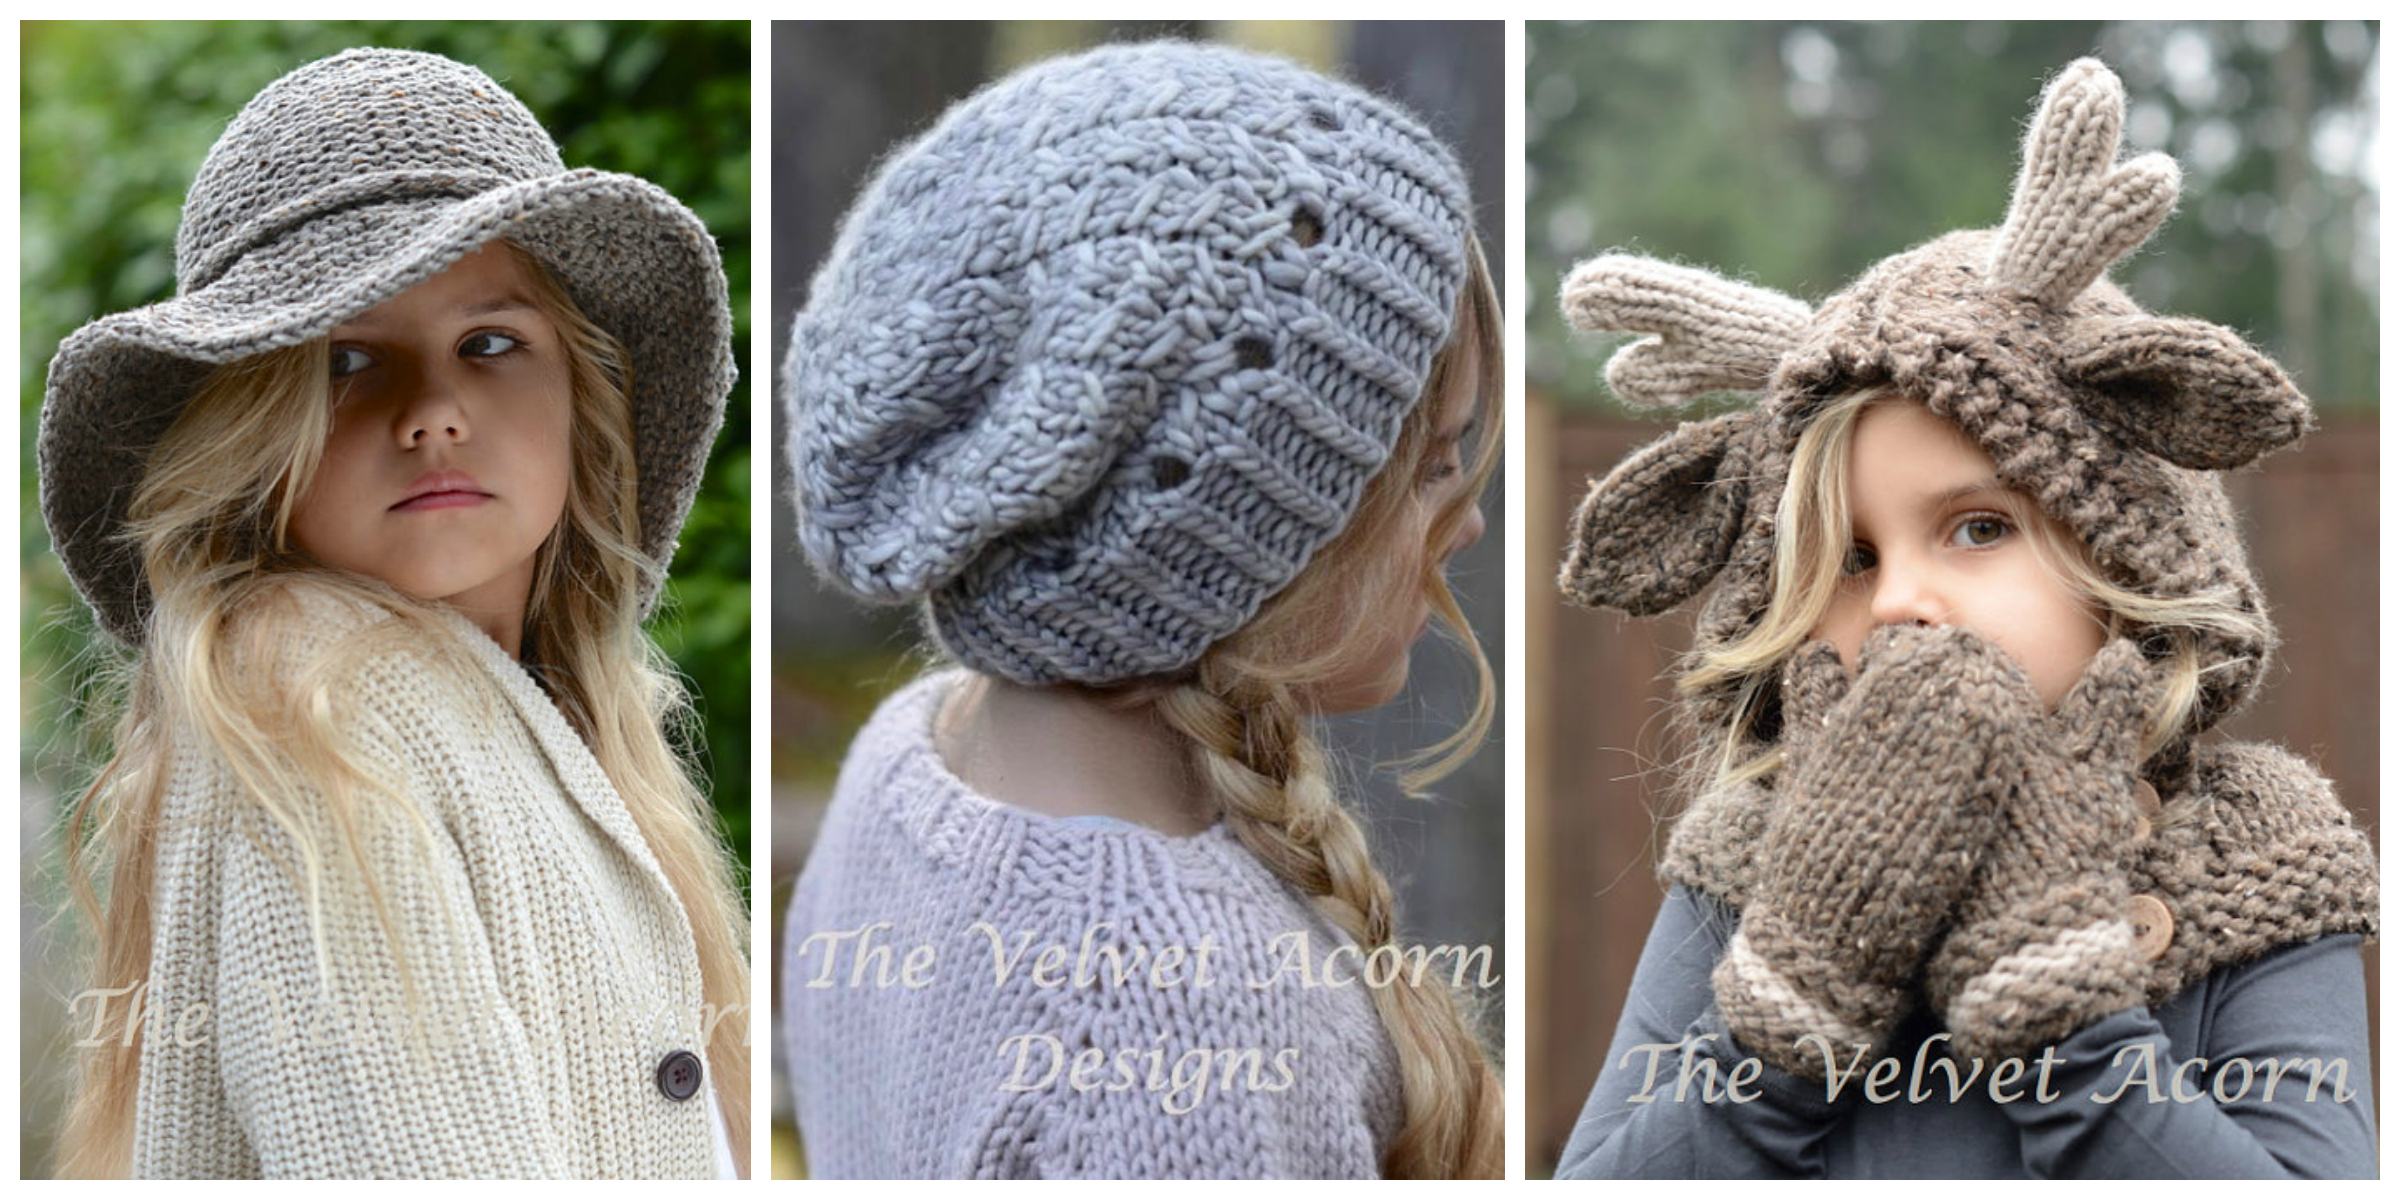 Knitting Patterns Headbands Designer Spotlight Knitted Animal Inspired Hoods Hats And